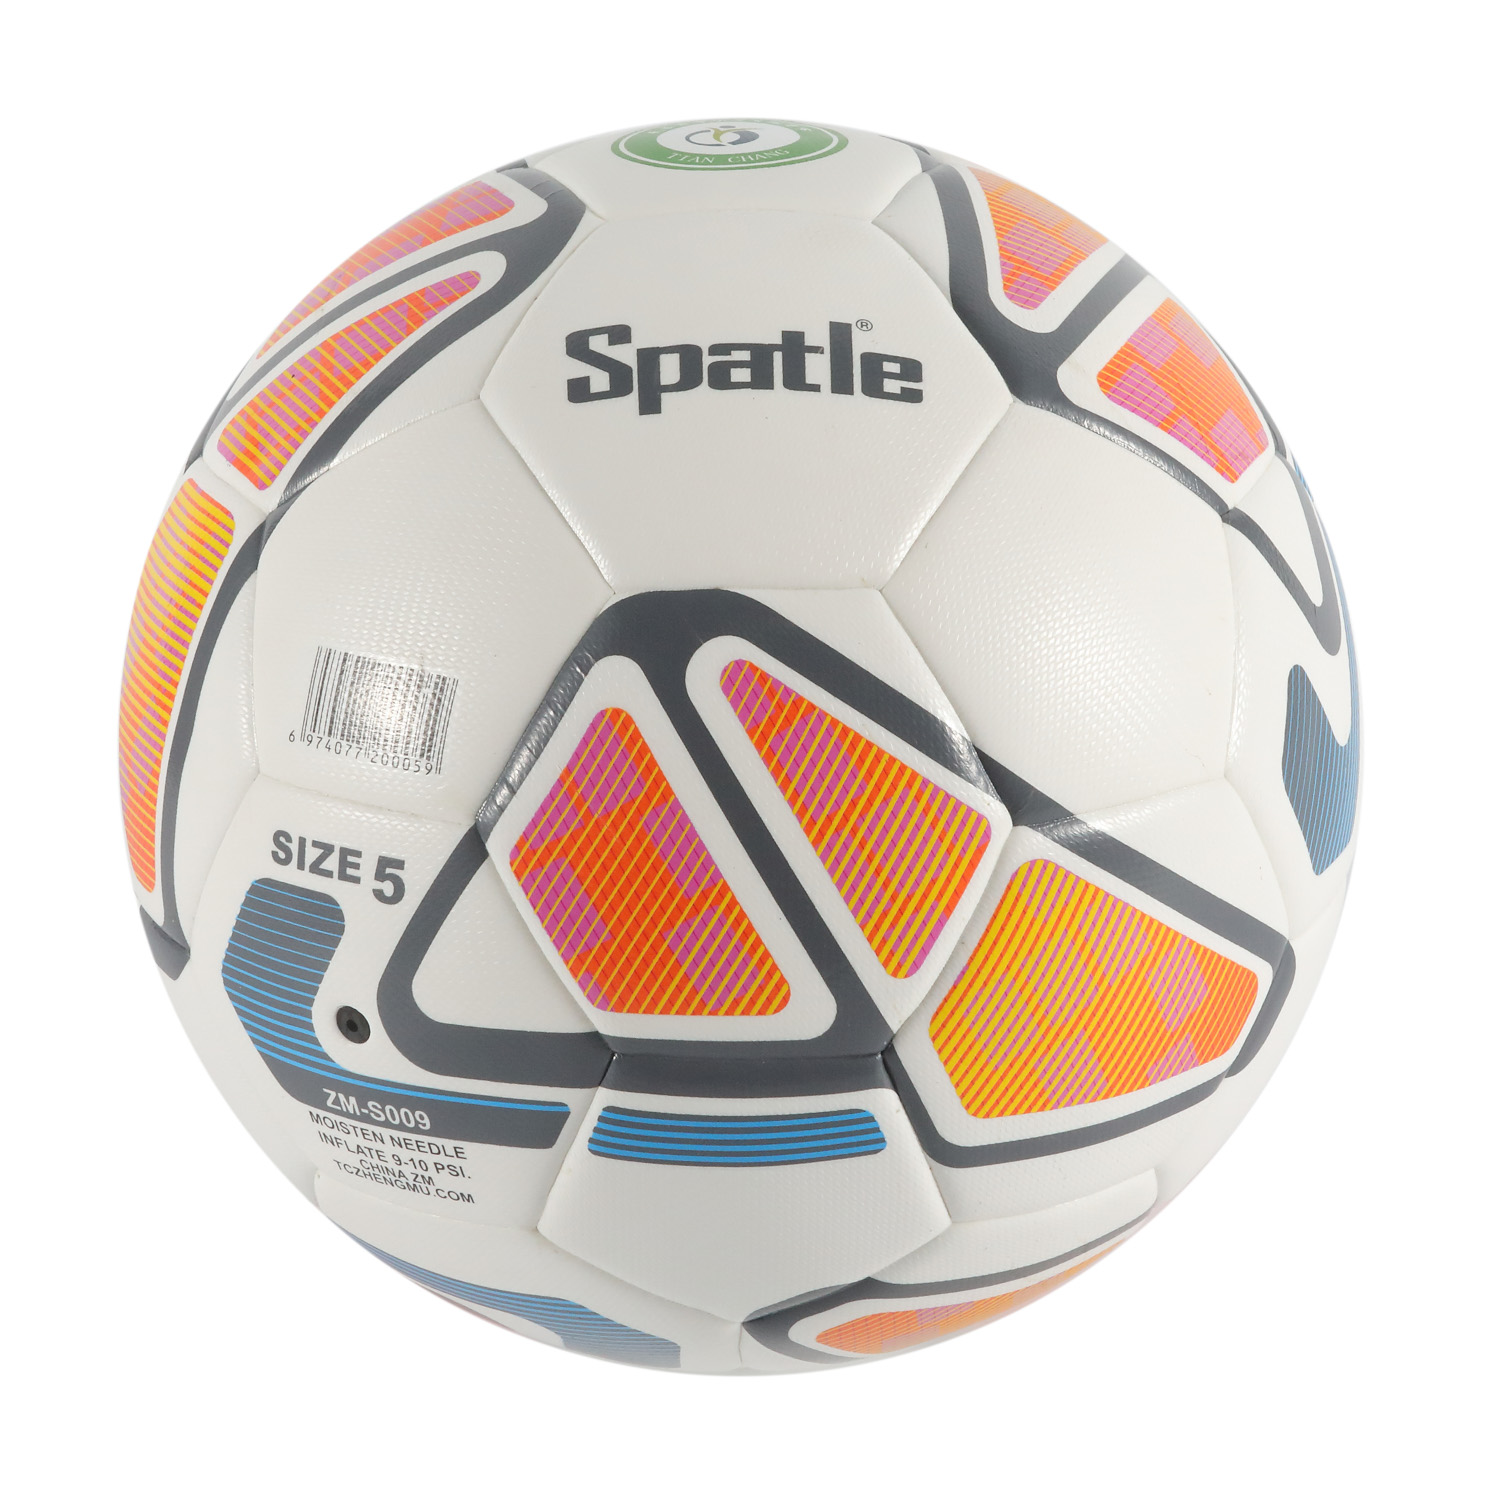 Werbegeschenk Maschinell genähte Fußball-/Fußballbälle mit individuellem Logo